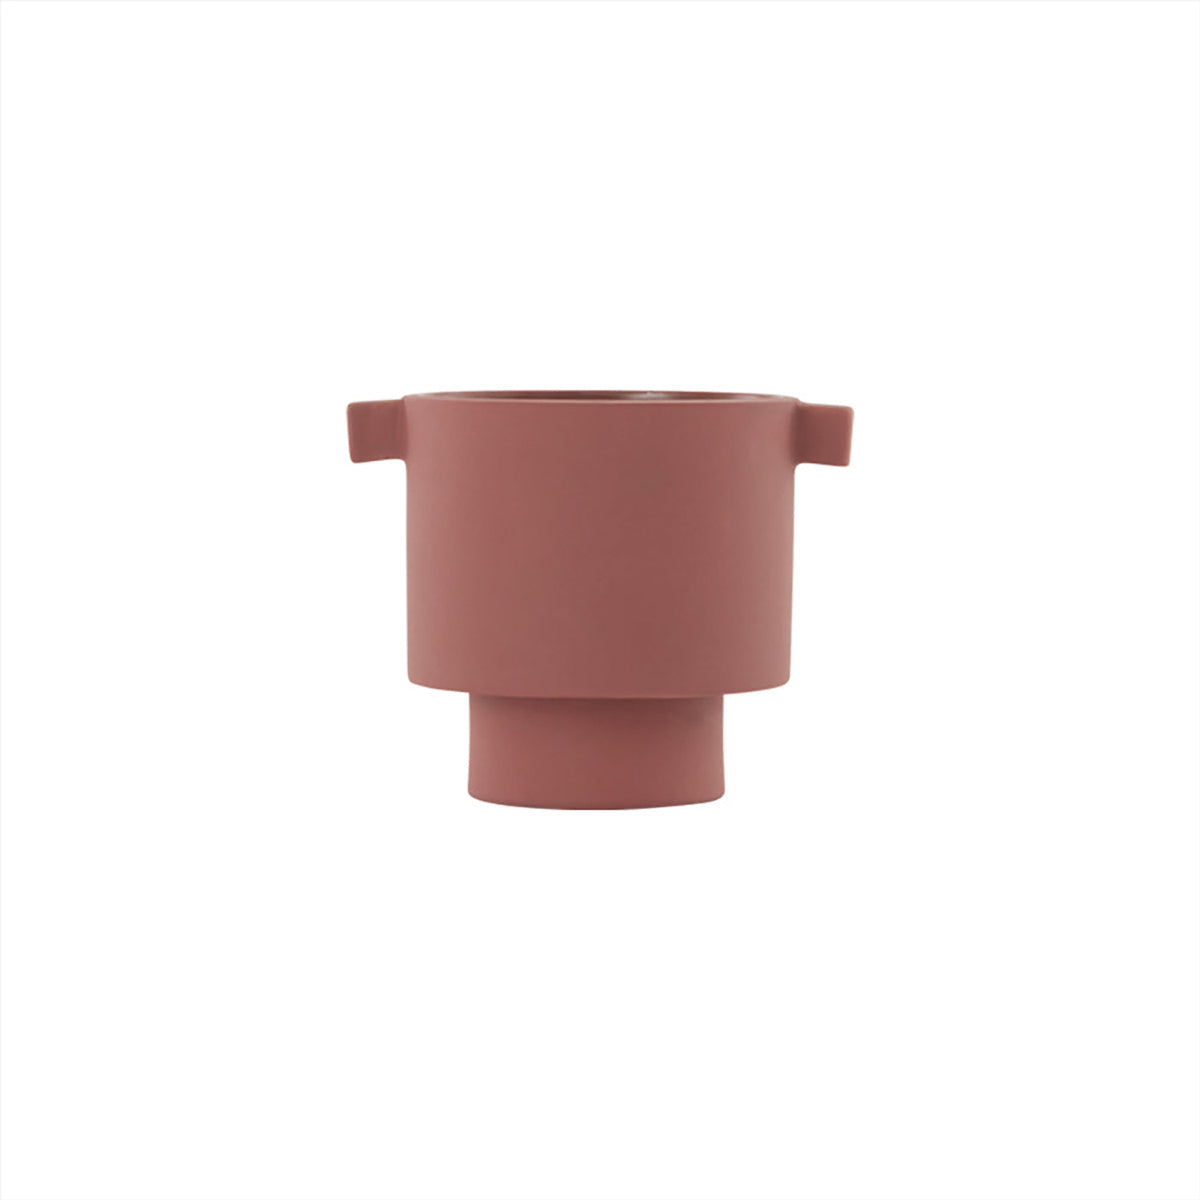 OYOY LIVING Inka Kana Pot - Small Vase 405 Sienna